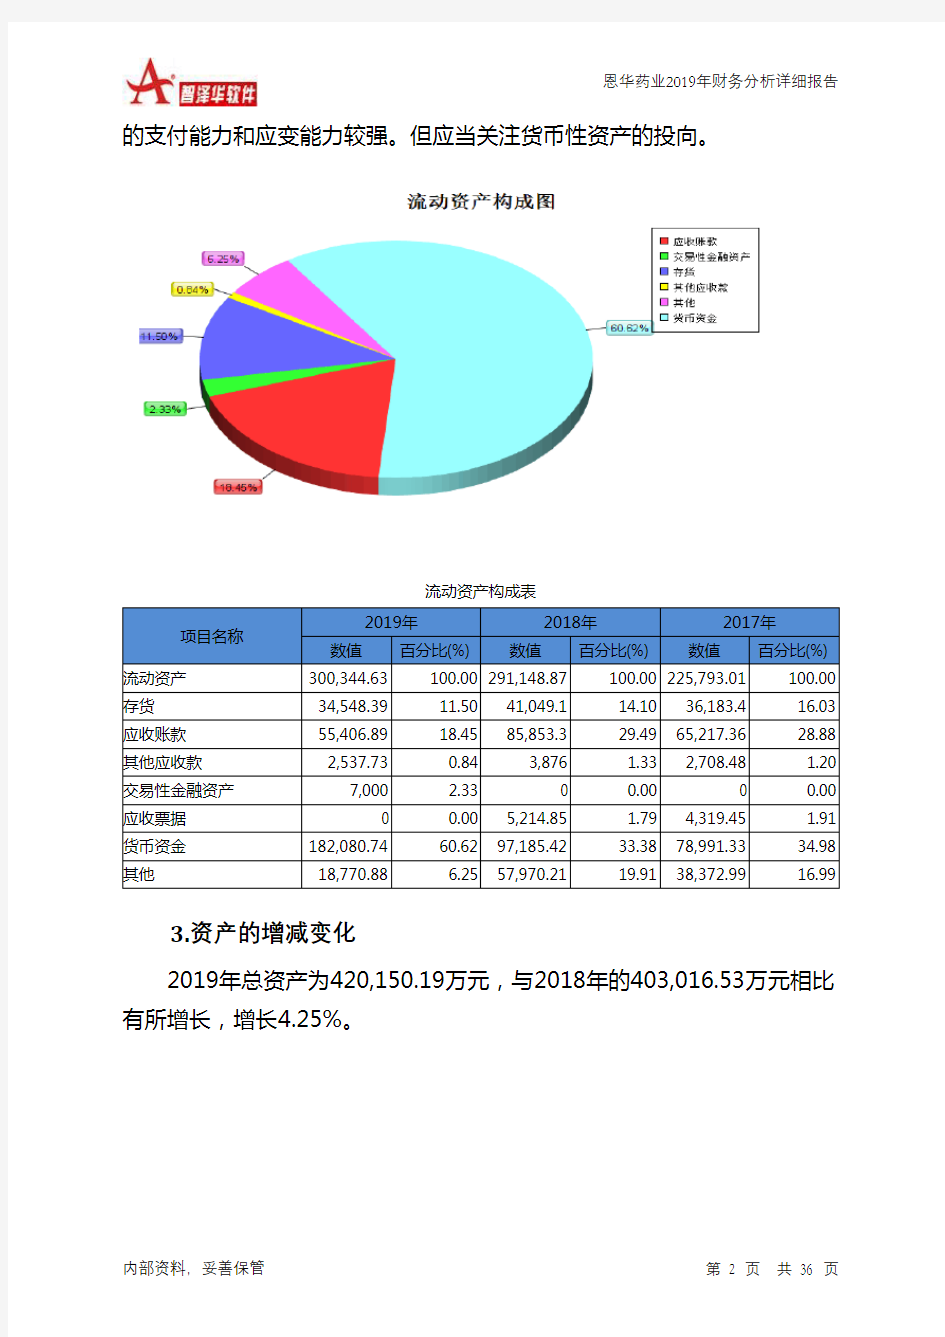 恩华药业2019年财务分析详细报告